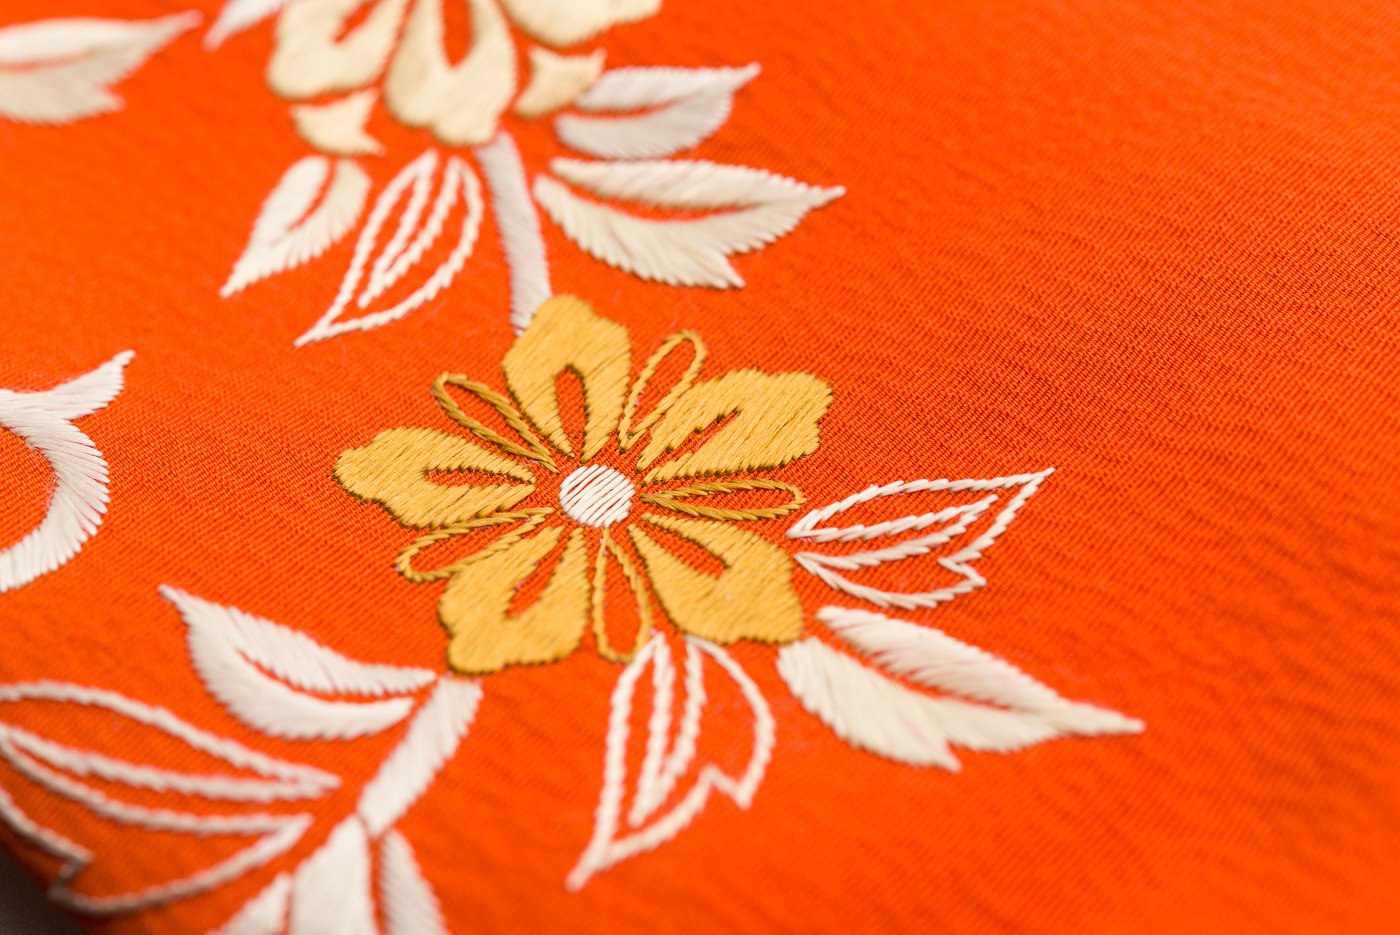 道行コート 絵羽 花刺繍 - からん::アンティーク着物・リサイクル着物 